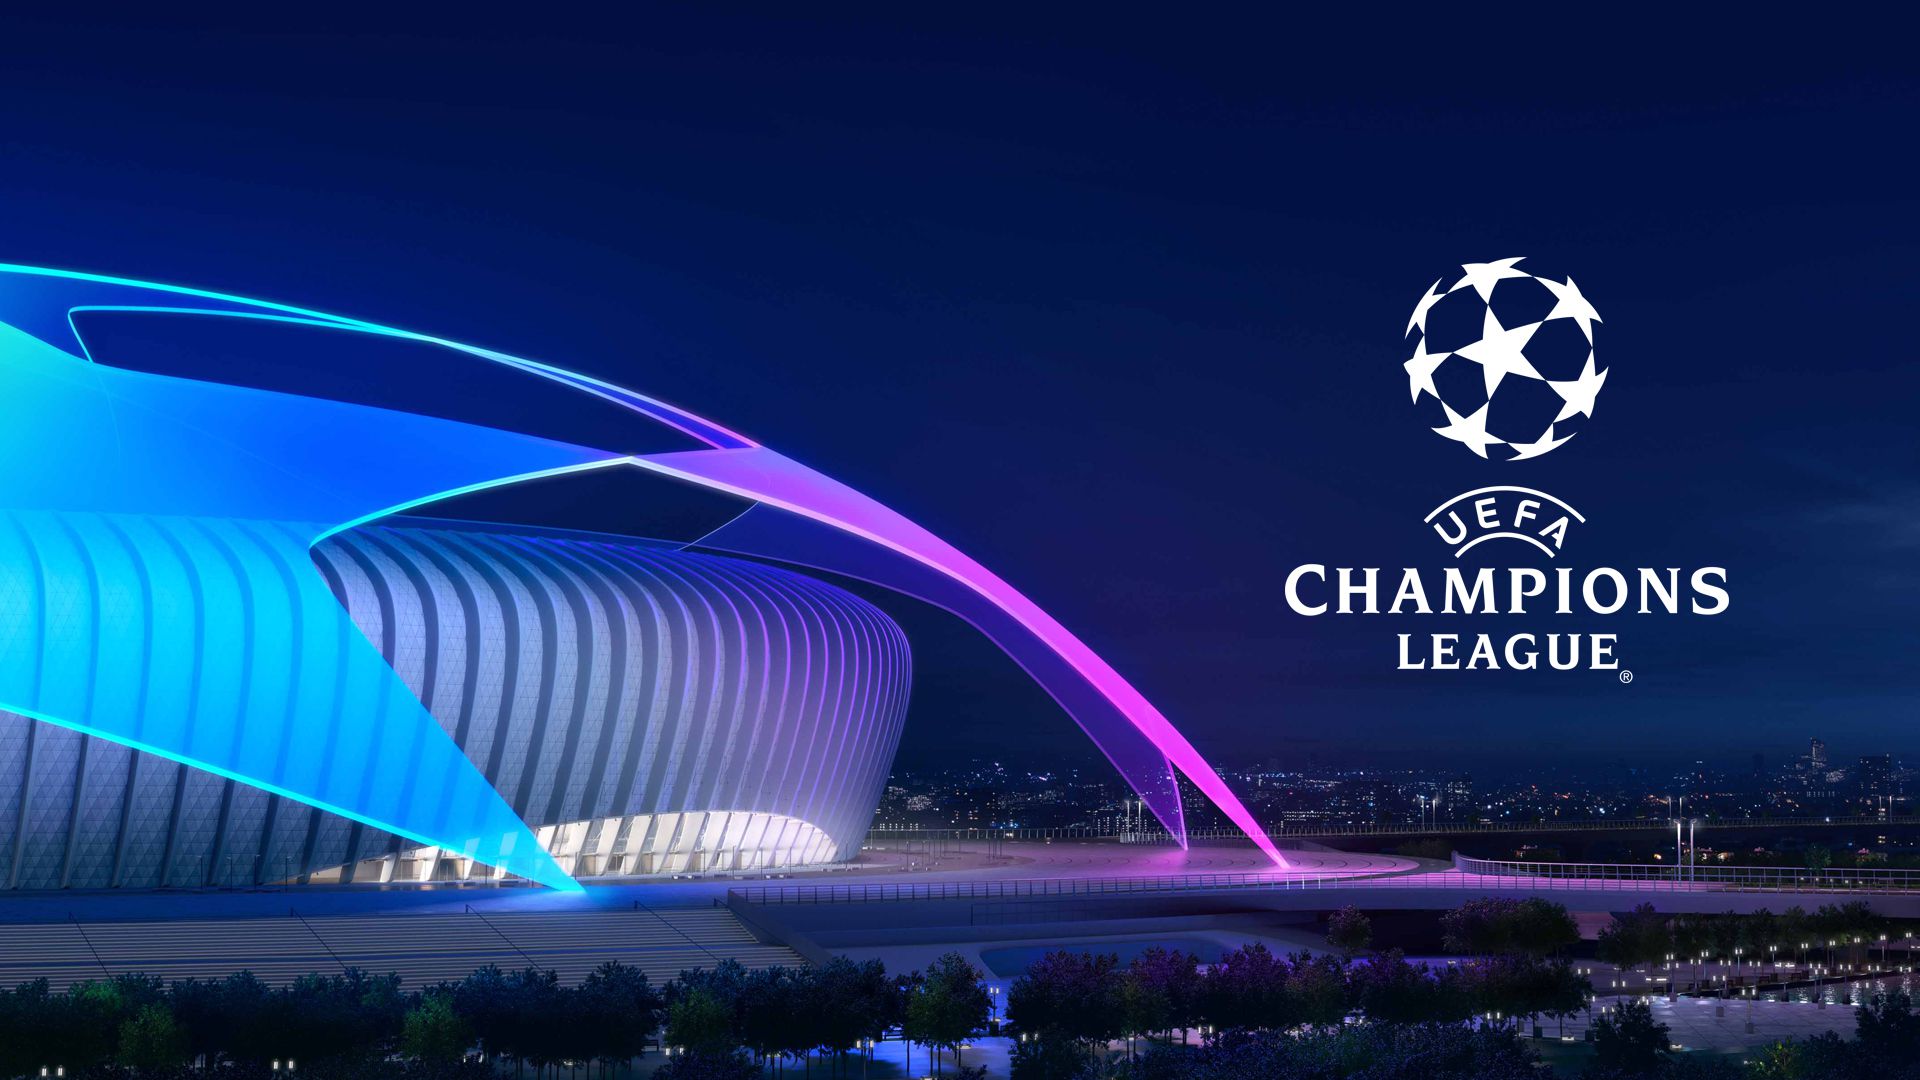 champions league wallpaper,landmark,light,sport venue,architecture,purple